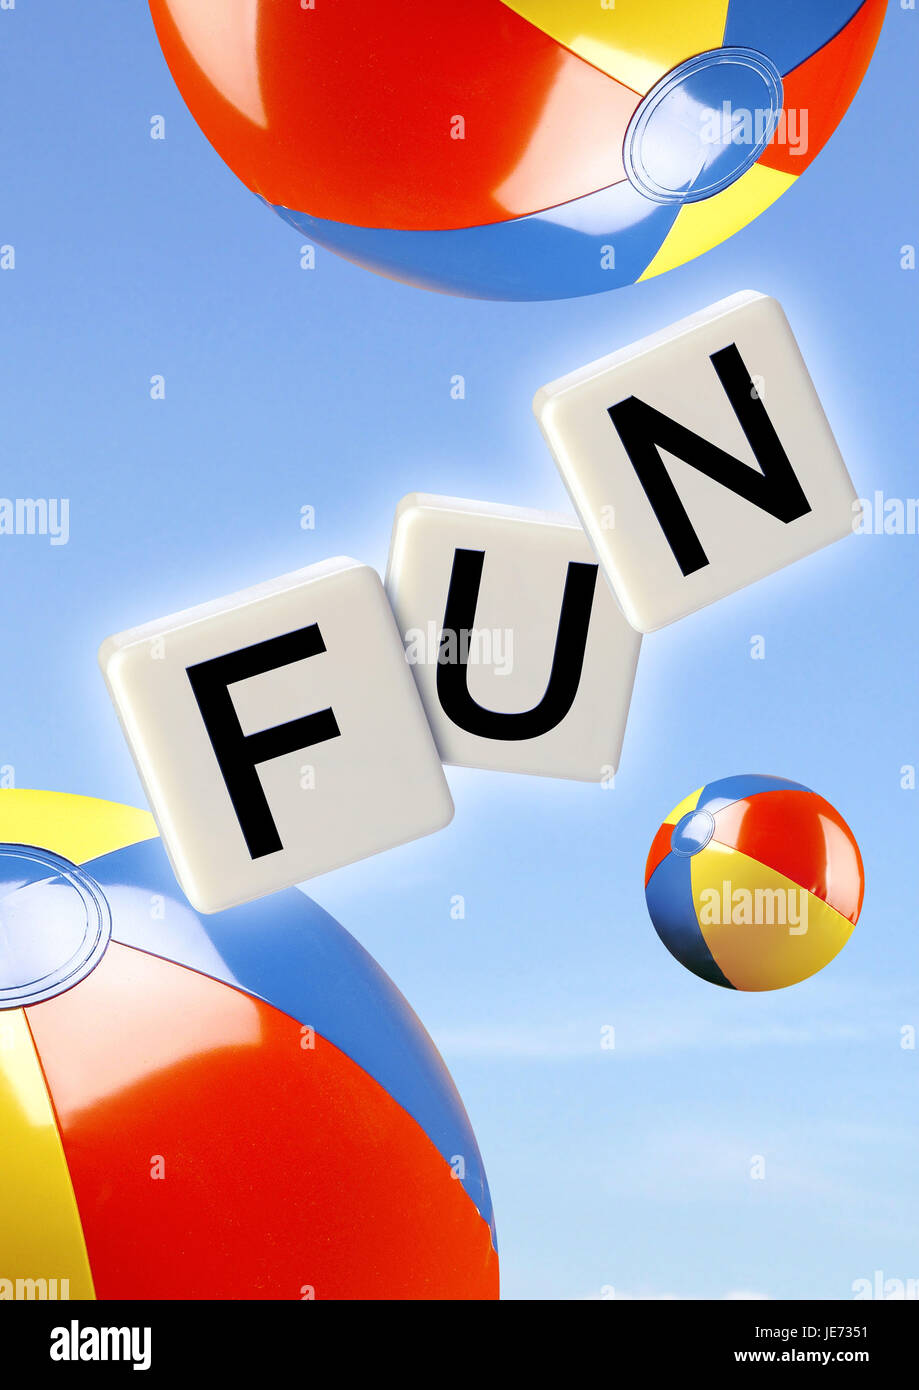 Beach-balls, dominos, de course 'fun', Banque D'Images